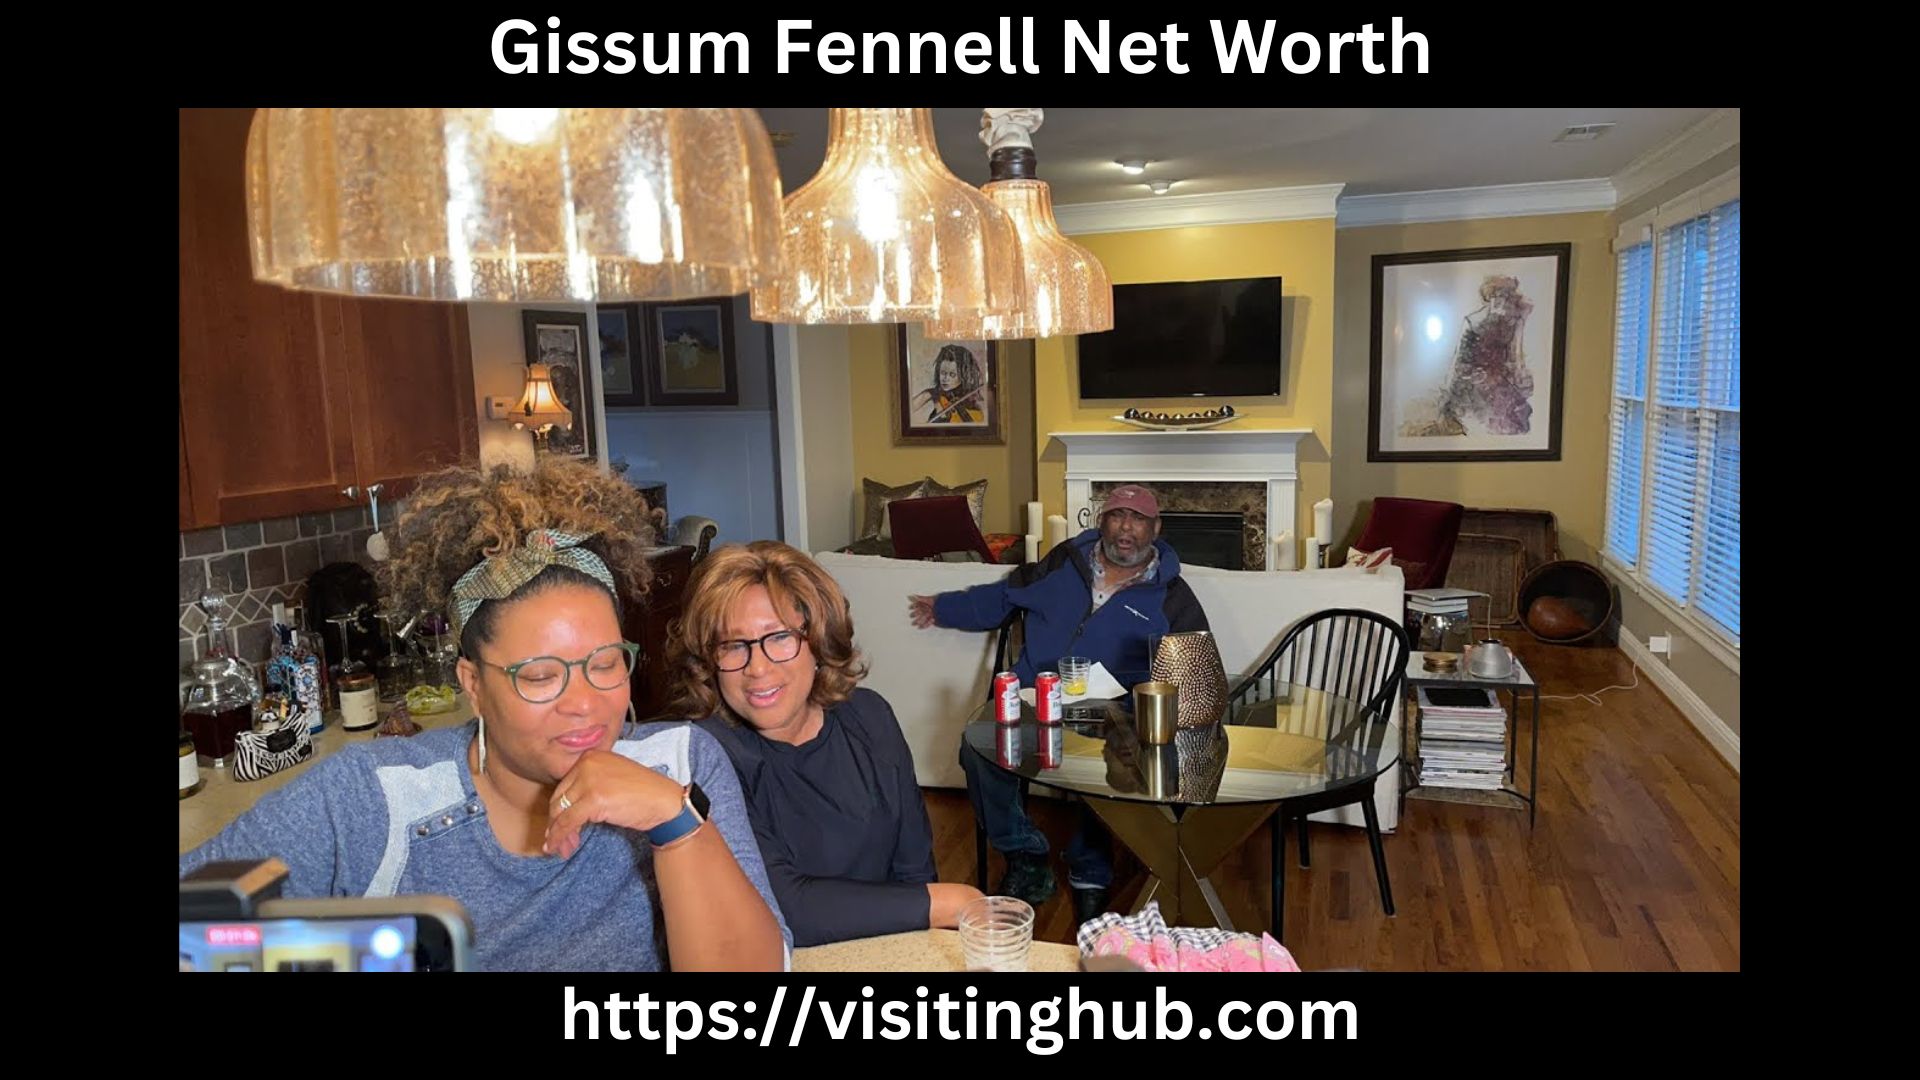 Gissum Fennell Net Worth